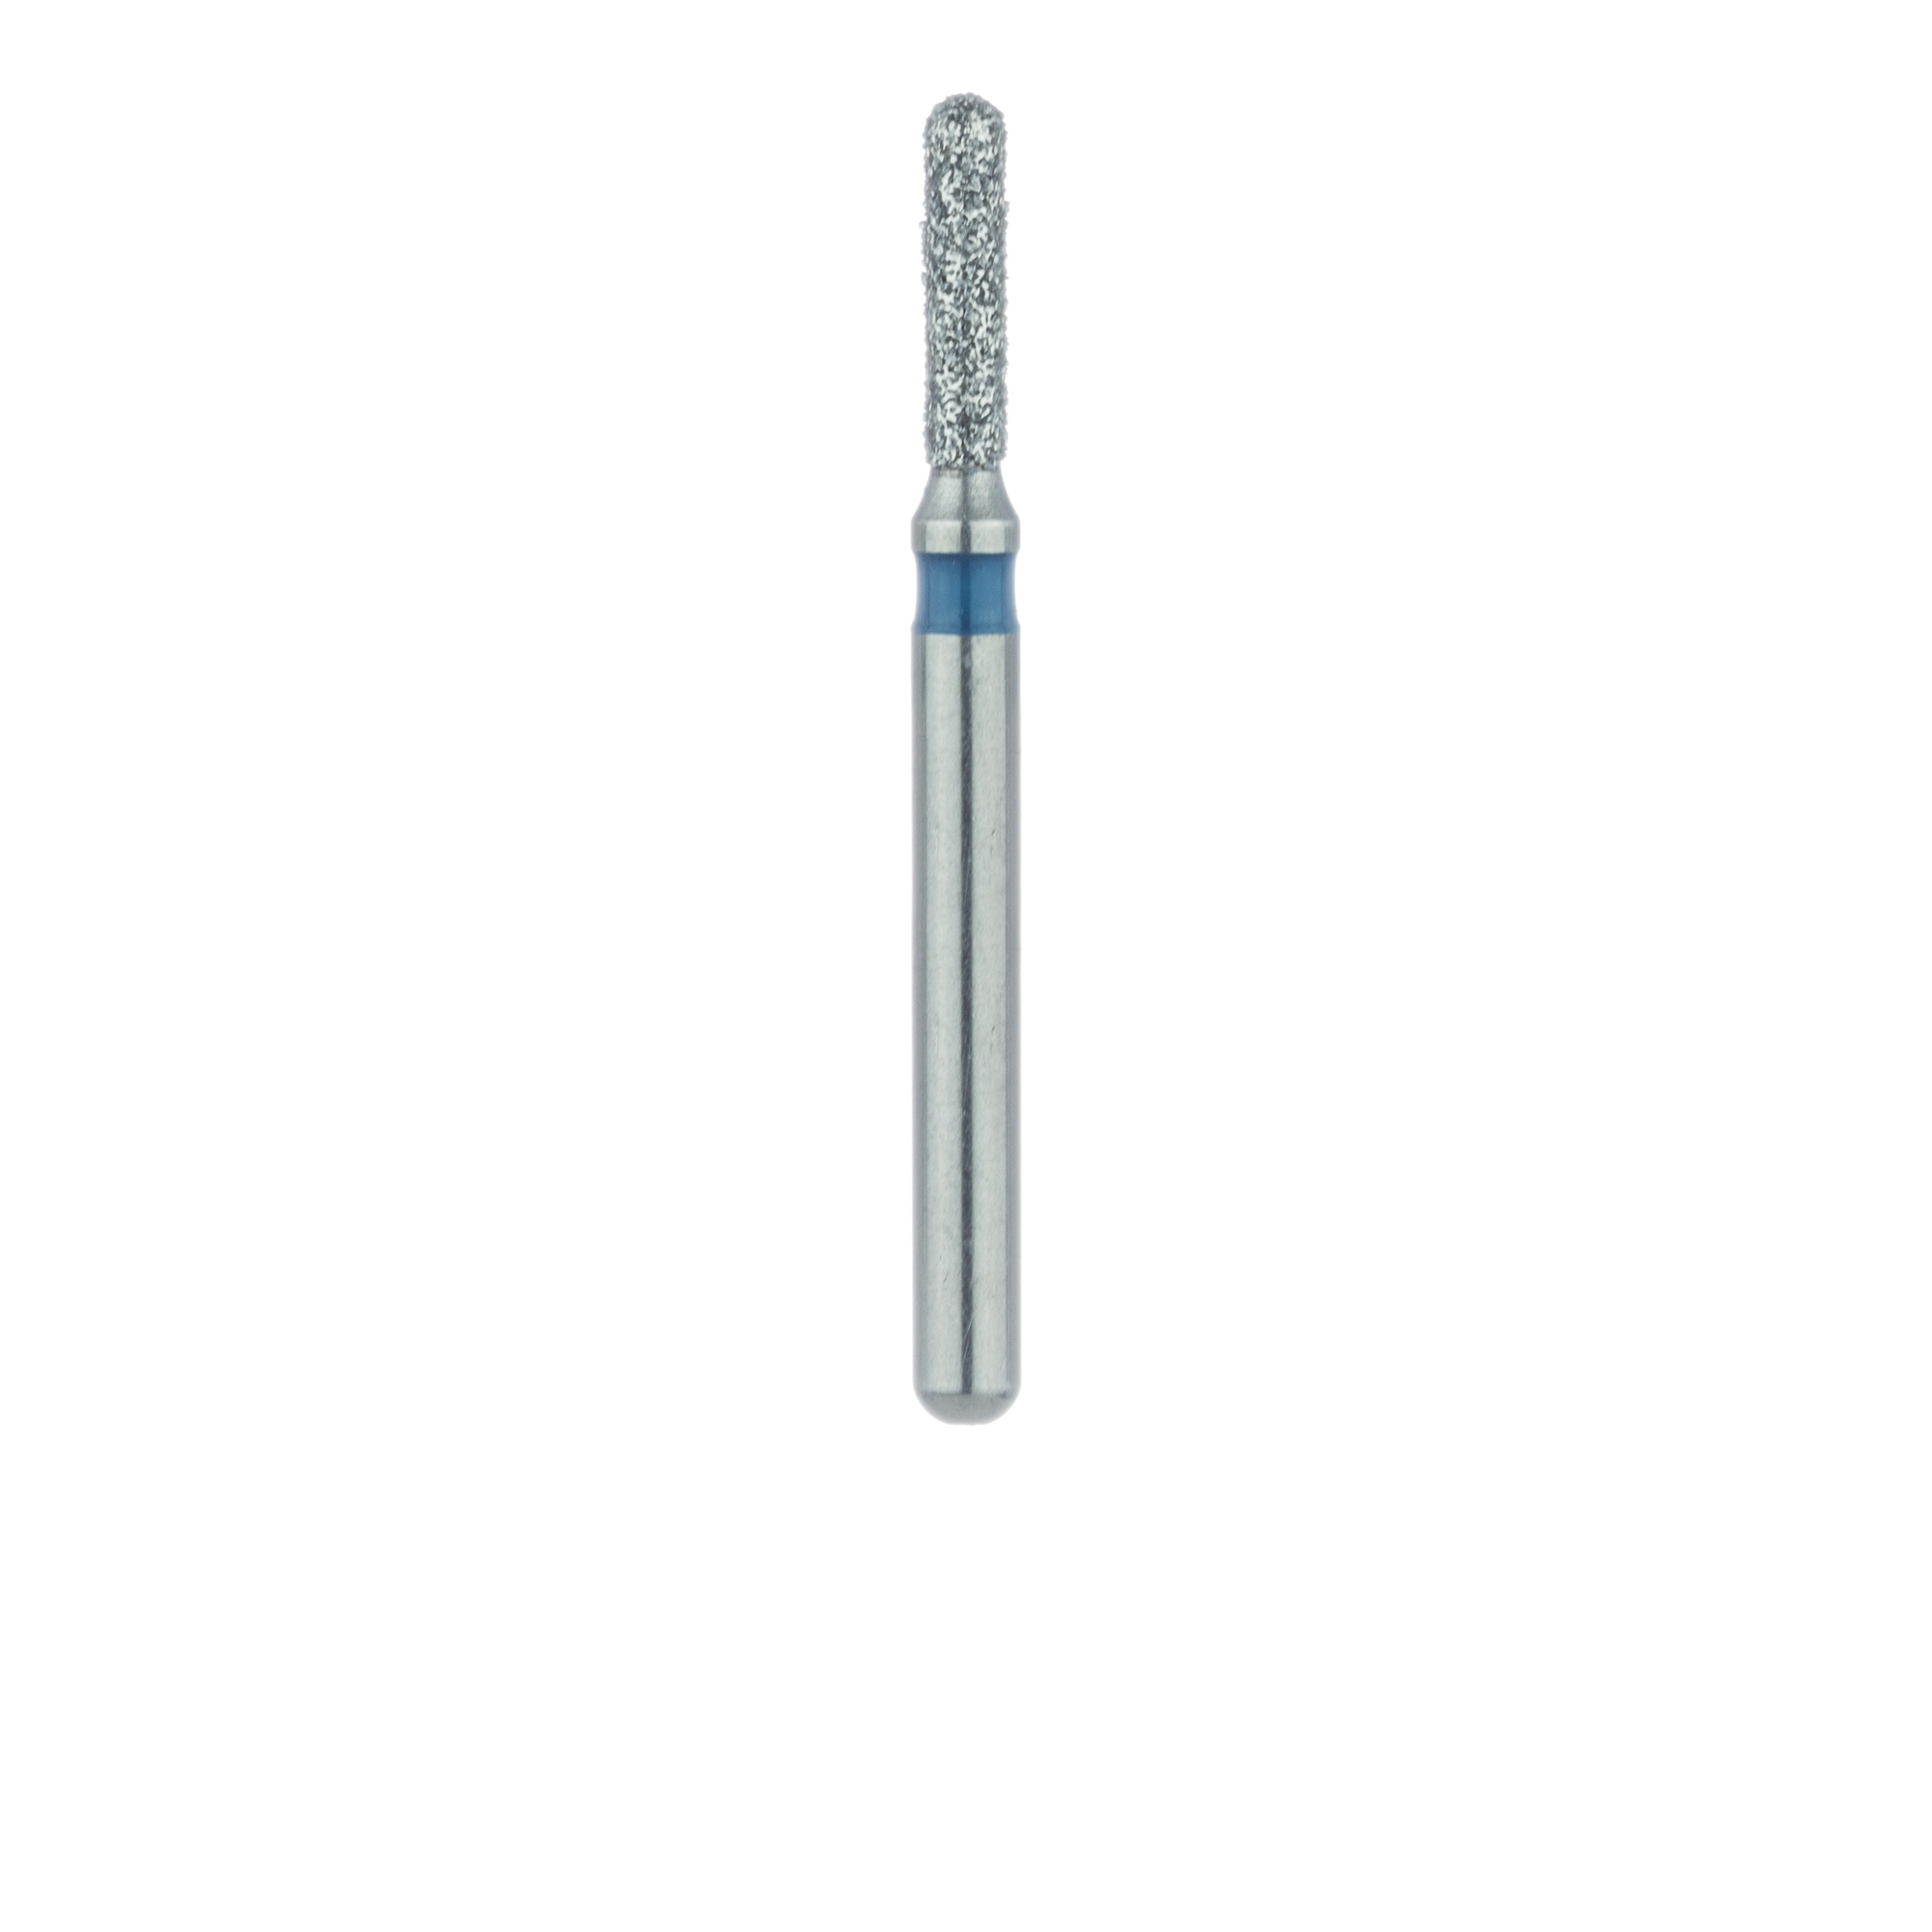 880-012-FG Round End Cylinder Diamond Bur, 1.2mm Ø, Medium, FG